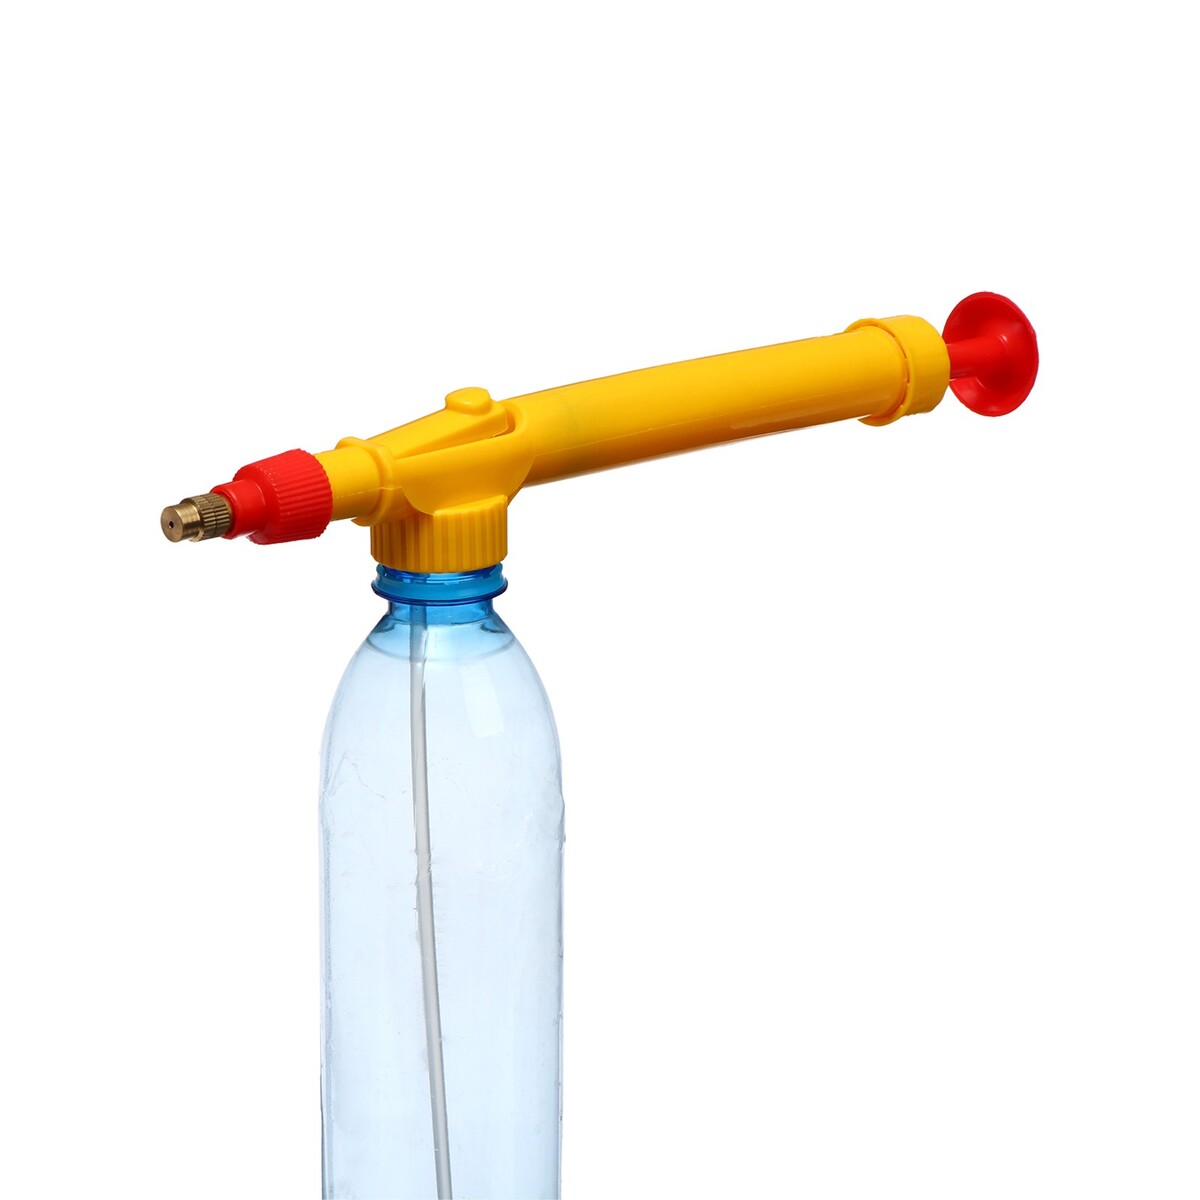 Опрыскиватель ручной, длина 29 см, с резьбой под пульверизатор/бутылку, пластик отвод стальной крутоизогнутый с резьбой 2